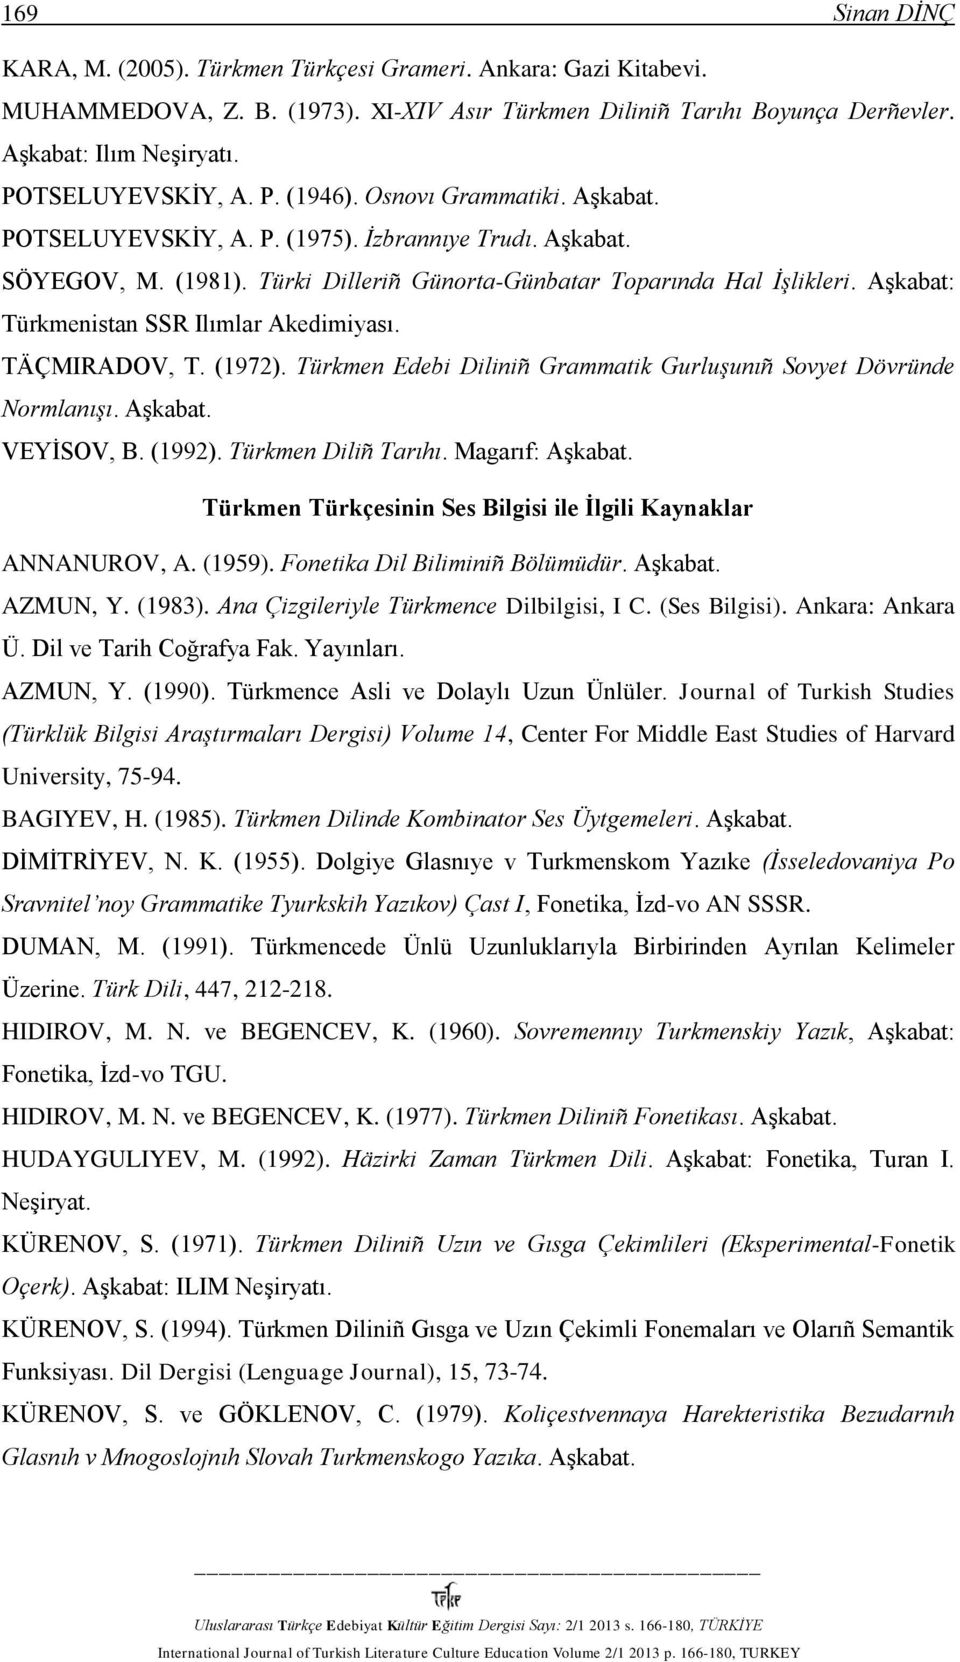 Aşkabat: Türkmenistan SSR Ilımlar Akedimiyası. TÄÇMIRADOV, T. (1972). Türkmen Edebi Diliniñ Grammatik Gurluşunıñ Sovyet Dövründe Normlanışı. VEYİSOV, B. (1992). Türkmen Diliñ Tarıhı.